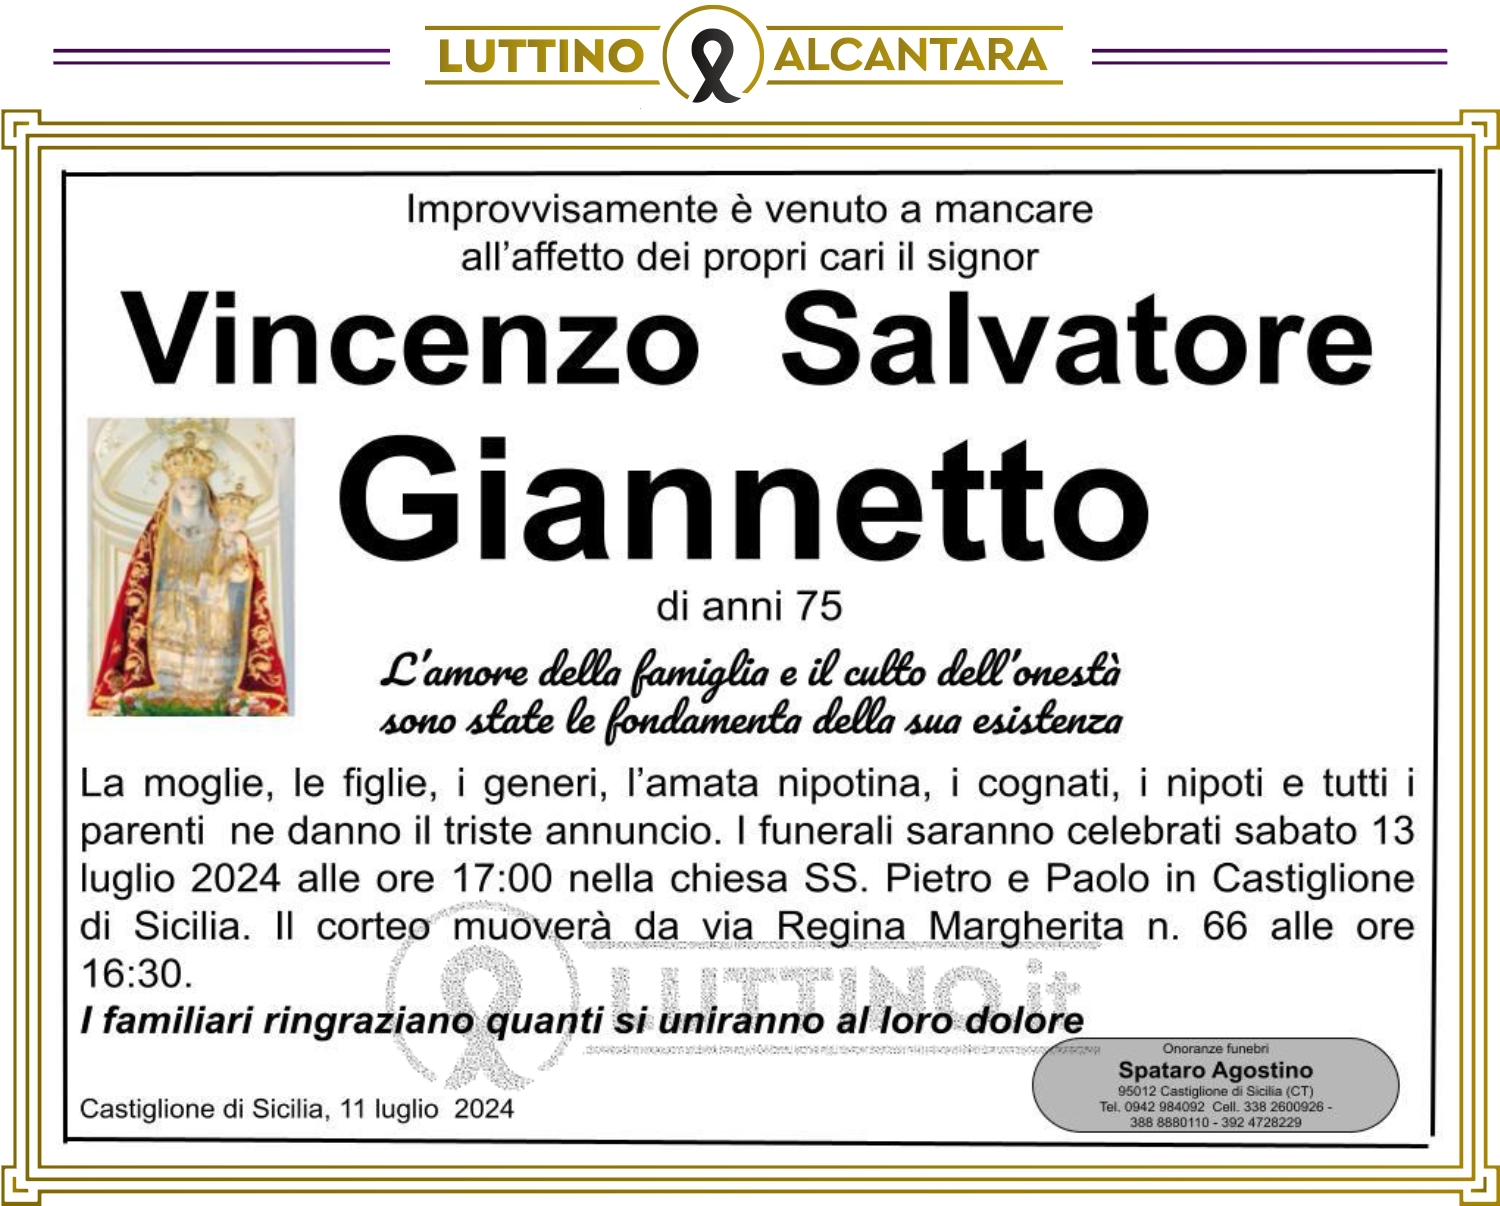 Vincenzo Salvatore Giannetto